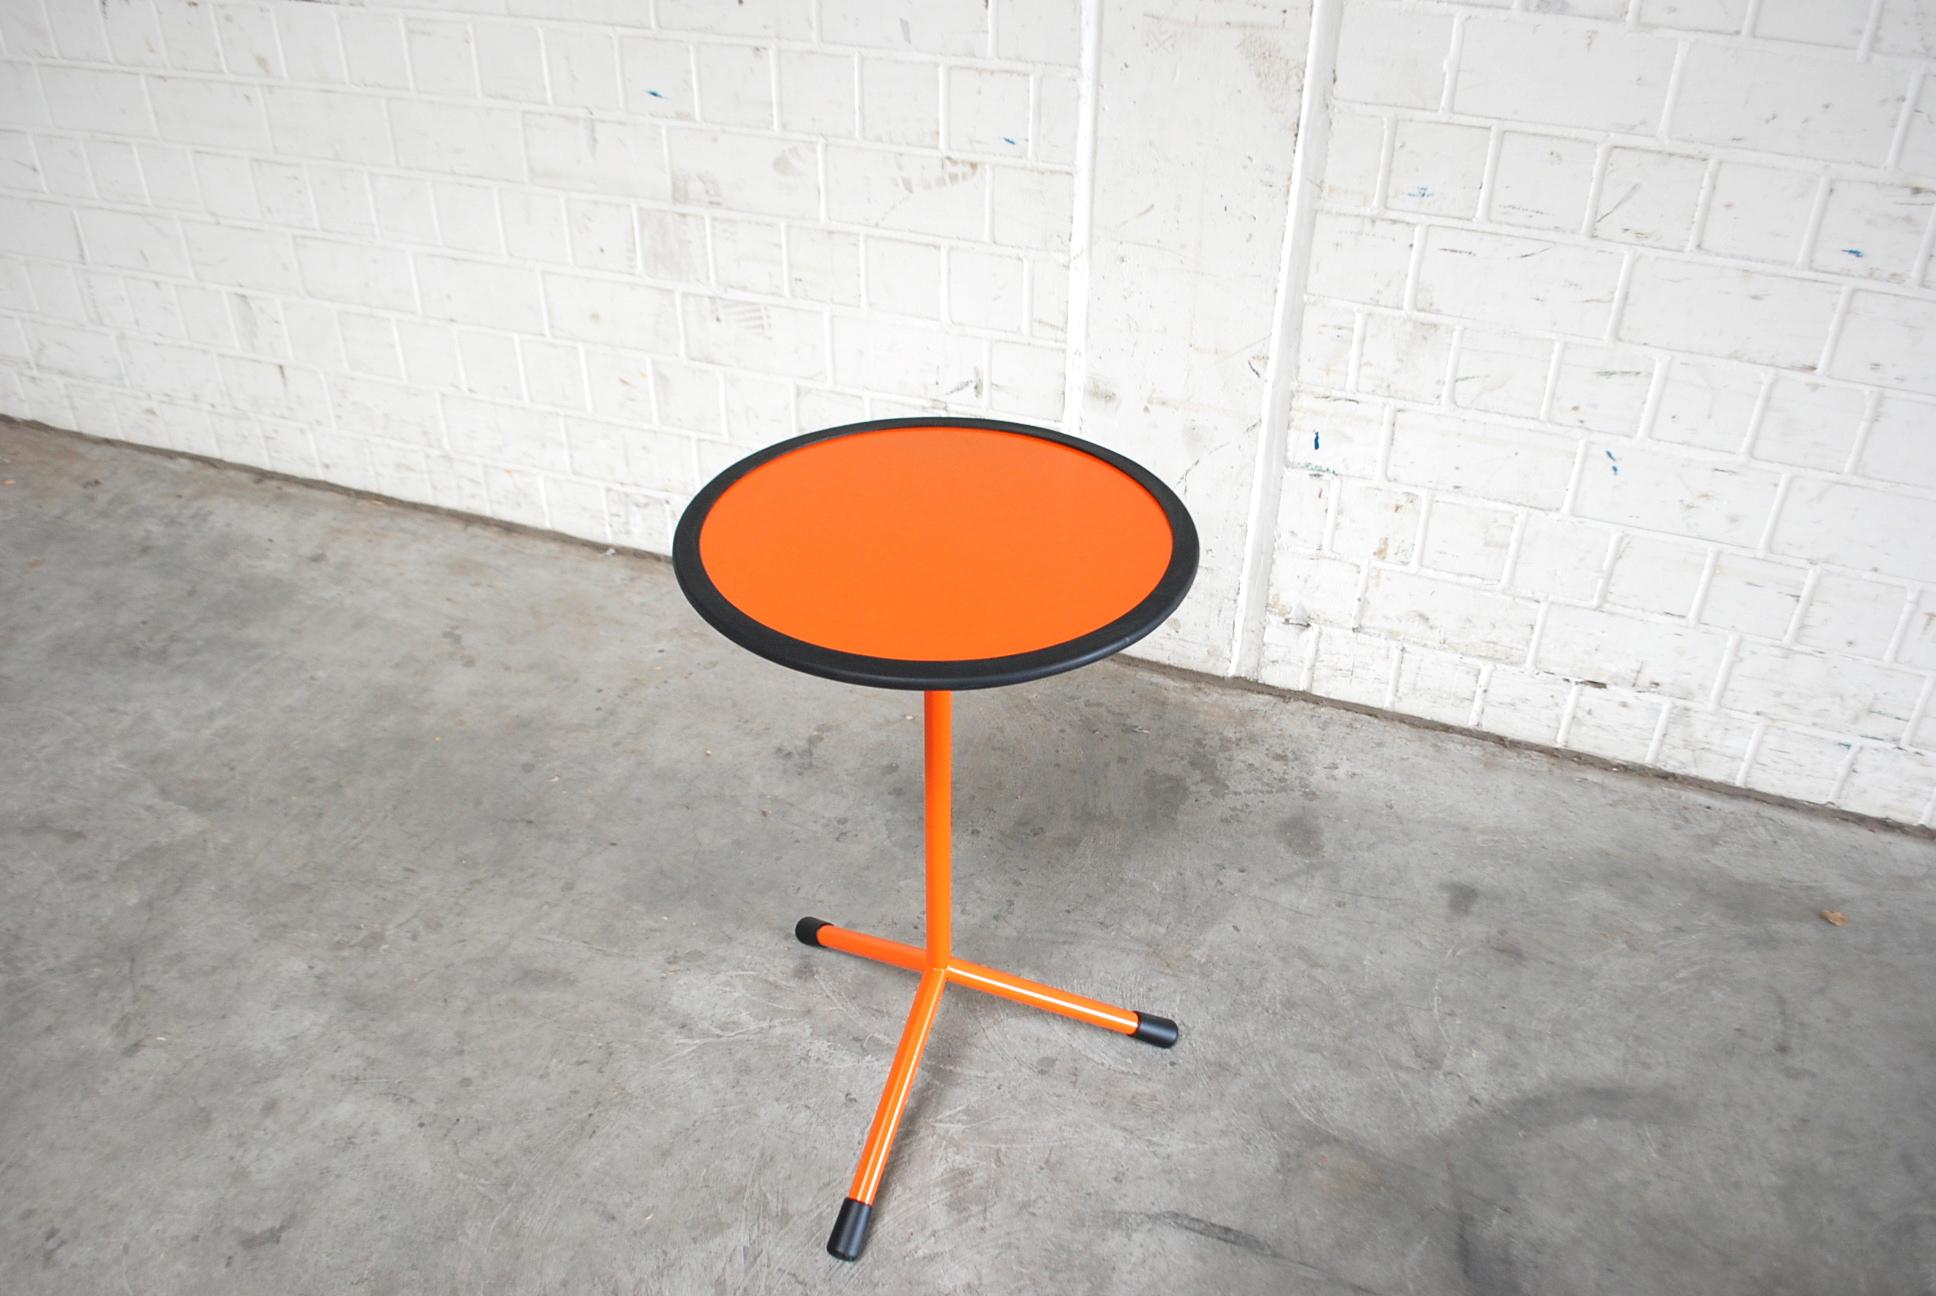 Minimalist Schellmann Art Furniture Minimal Conceptual Orange Round Table